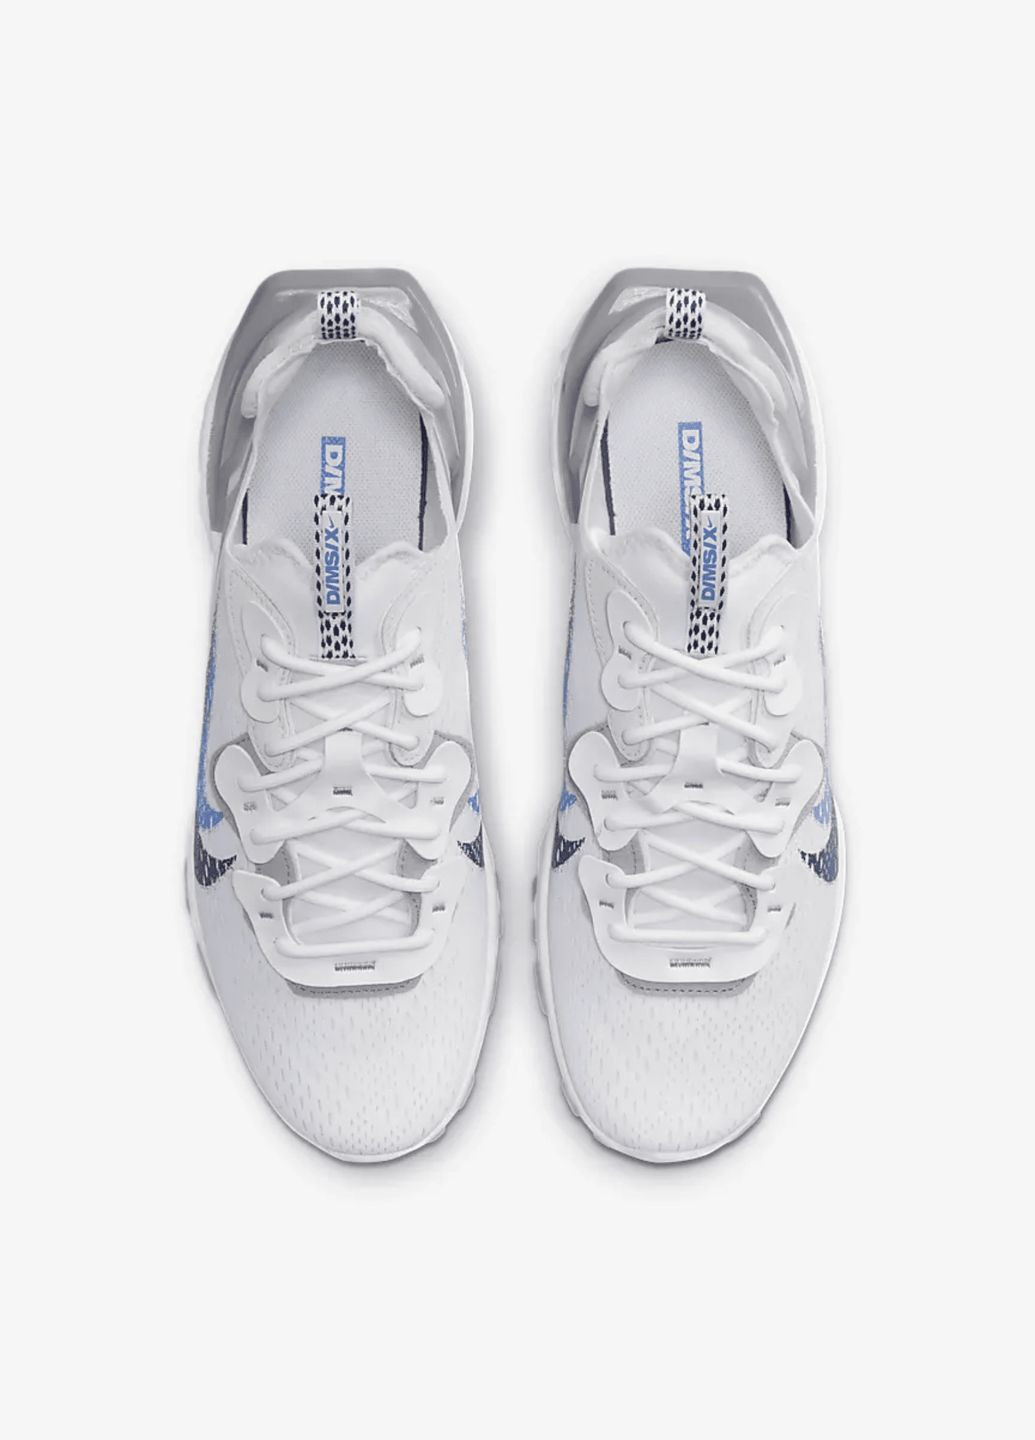 Білі всесезон кросівки чоловічі react vision fj4231-100 весна-літо текстиль сітка білі Nike